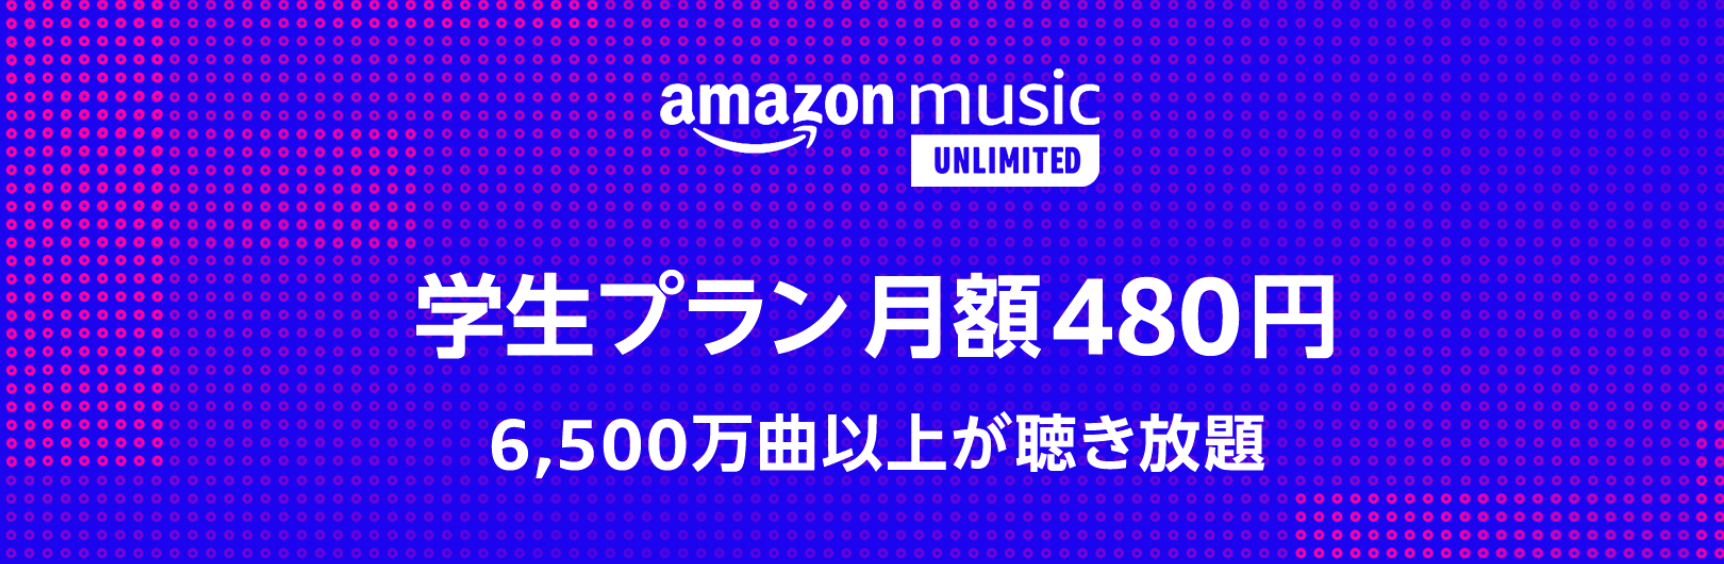 ｢Amazon Music Unlimited｣に月額480円で利用可能な学生プランが登場 − 6ヶ月間無料キャンペーンも